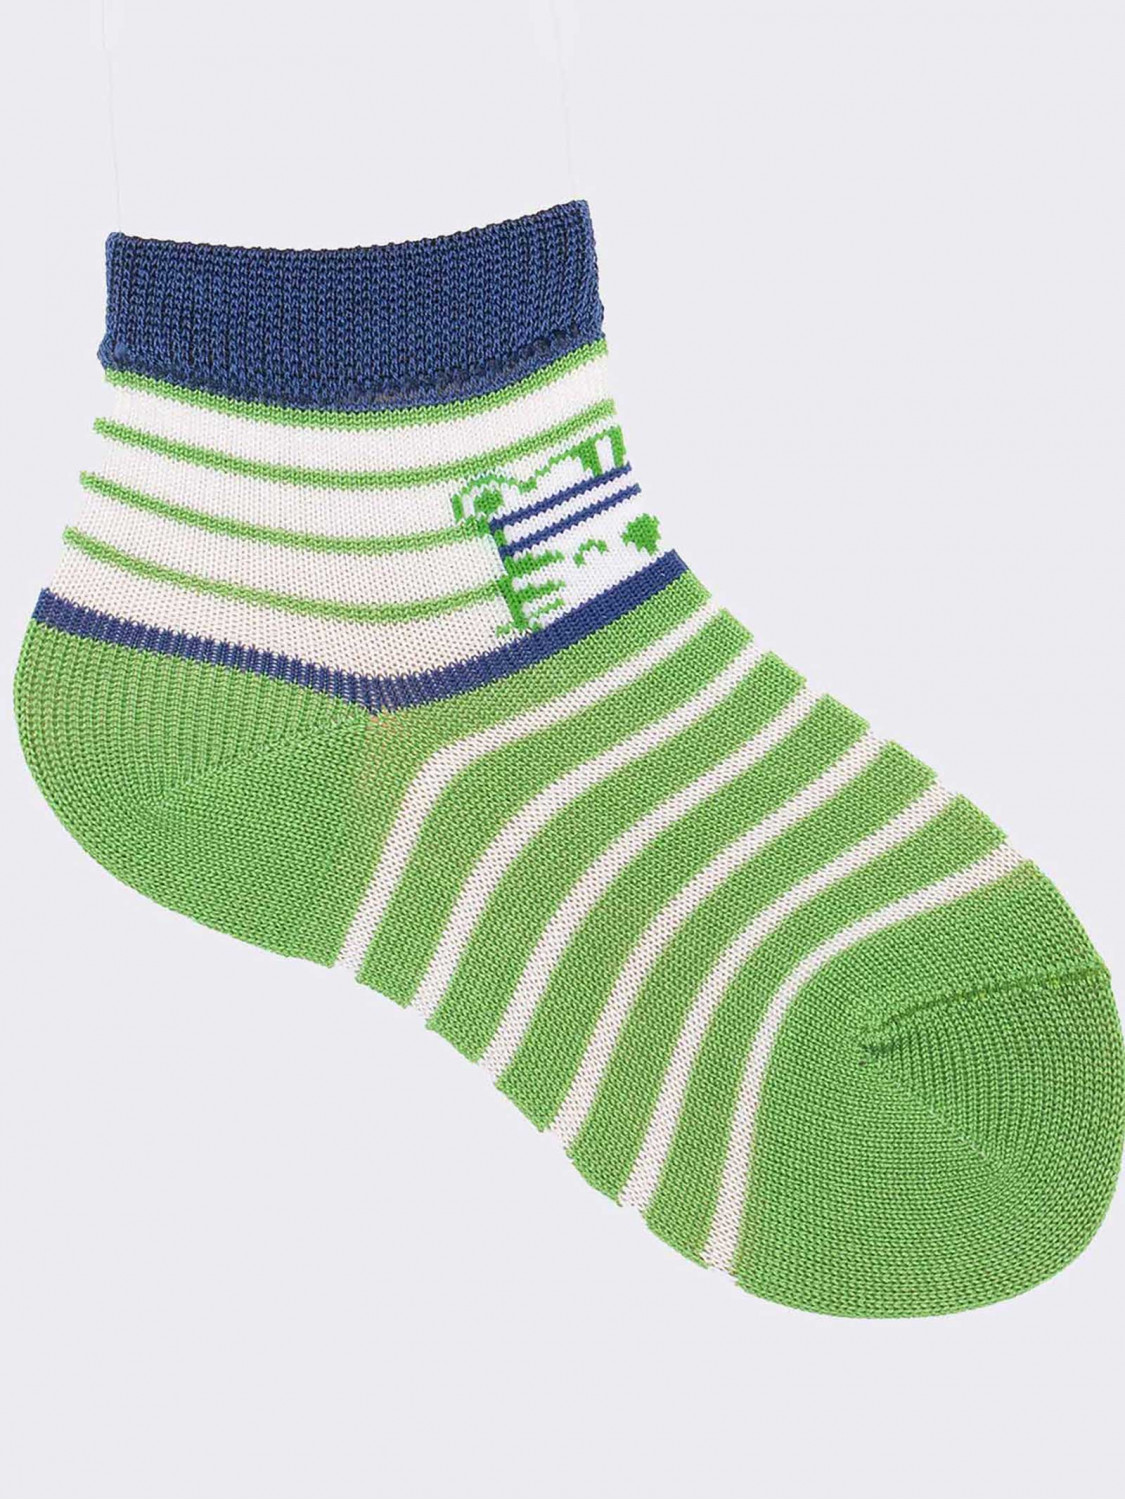 Kurze, schicke Socken für Jungen aus kühler Baumwolle